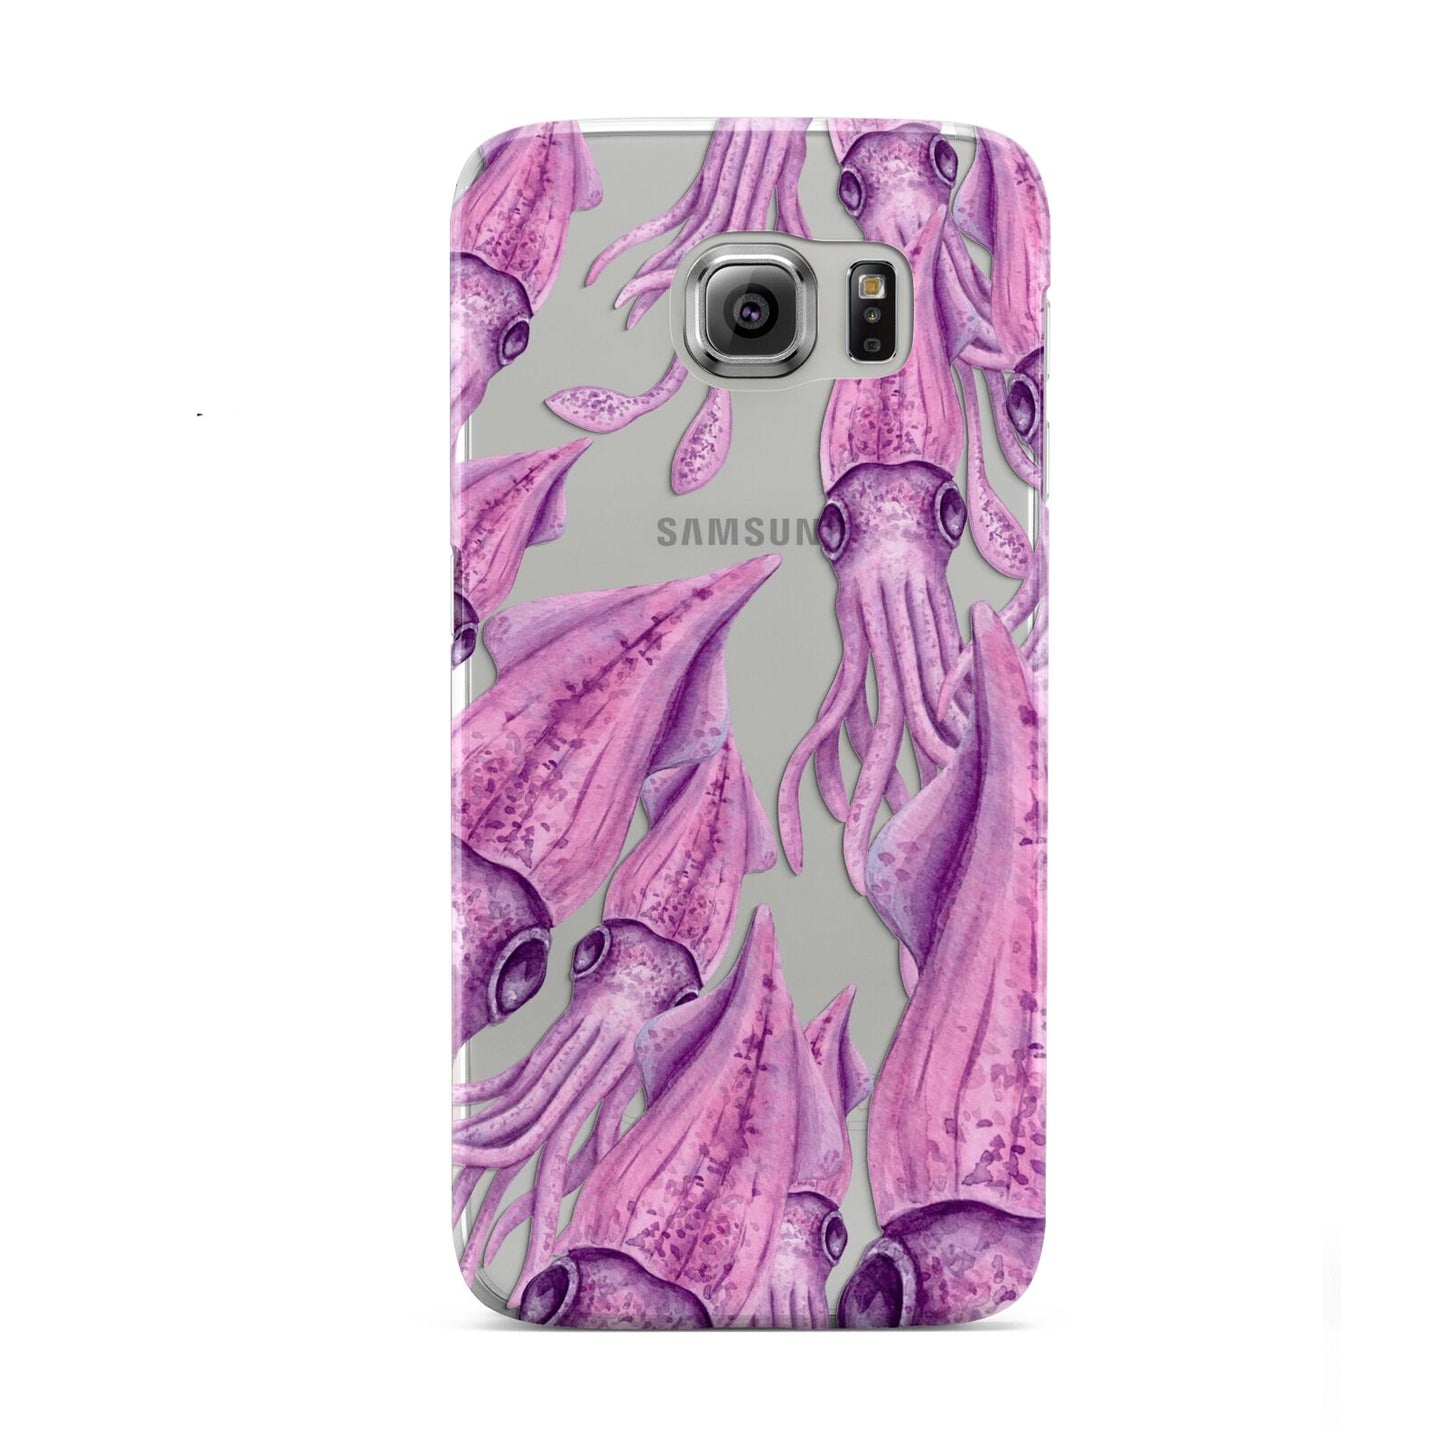 Squid Samsung Galaxy S6 Case